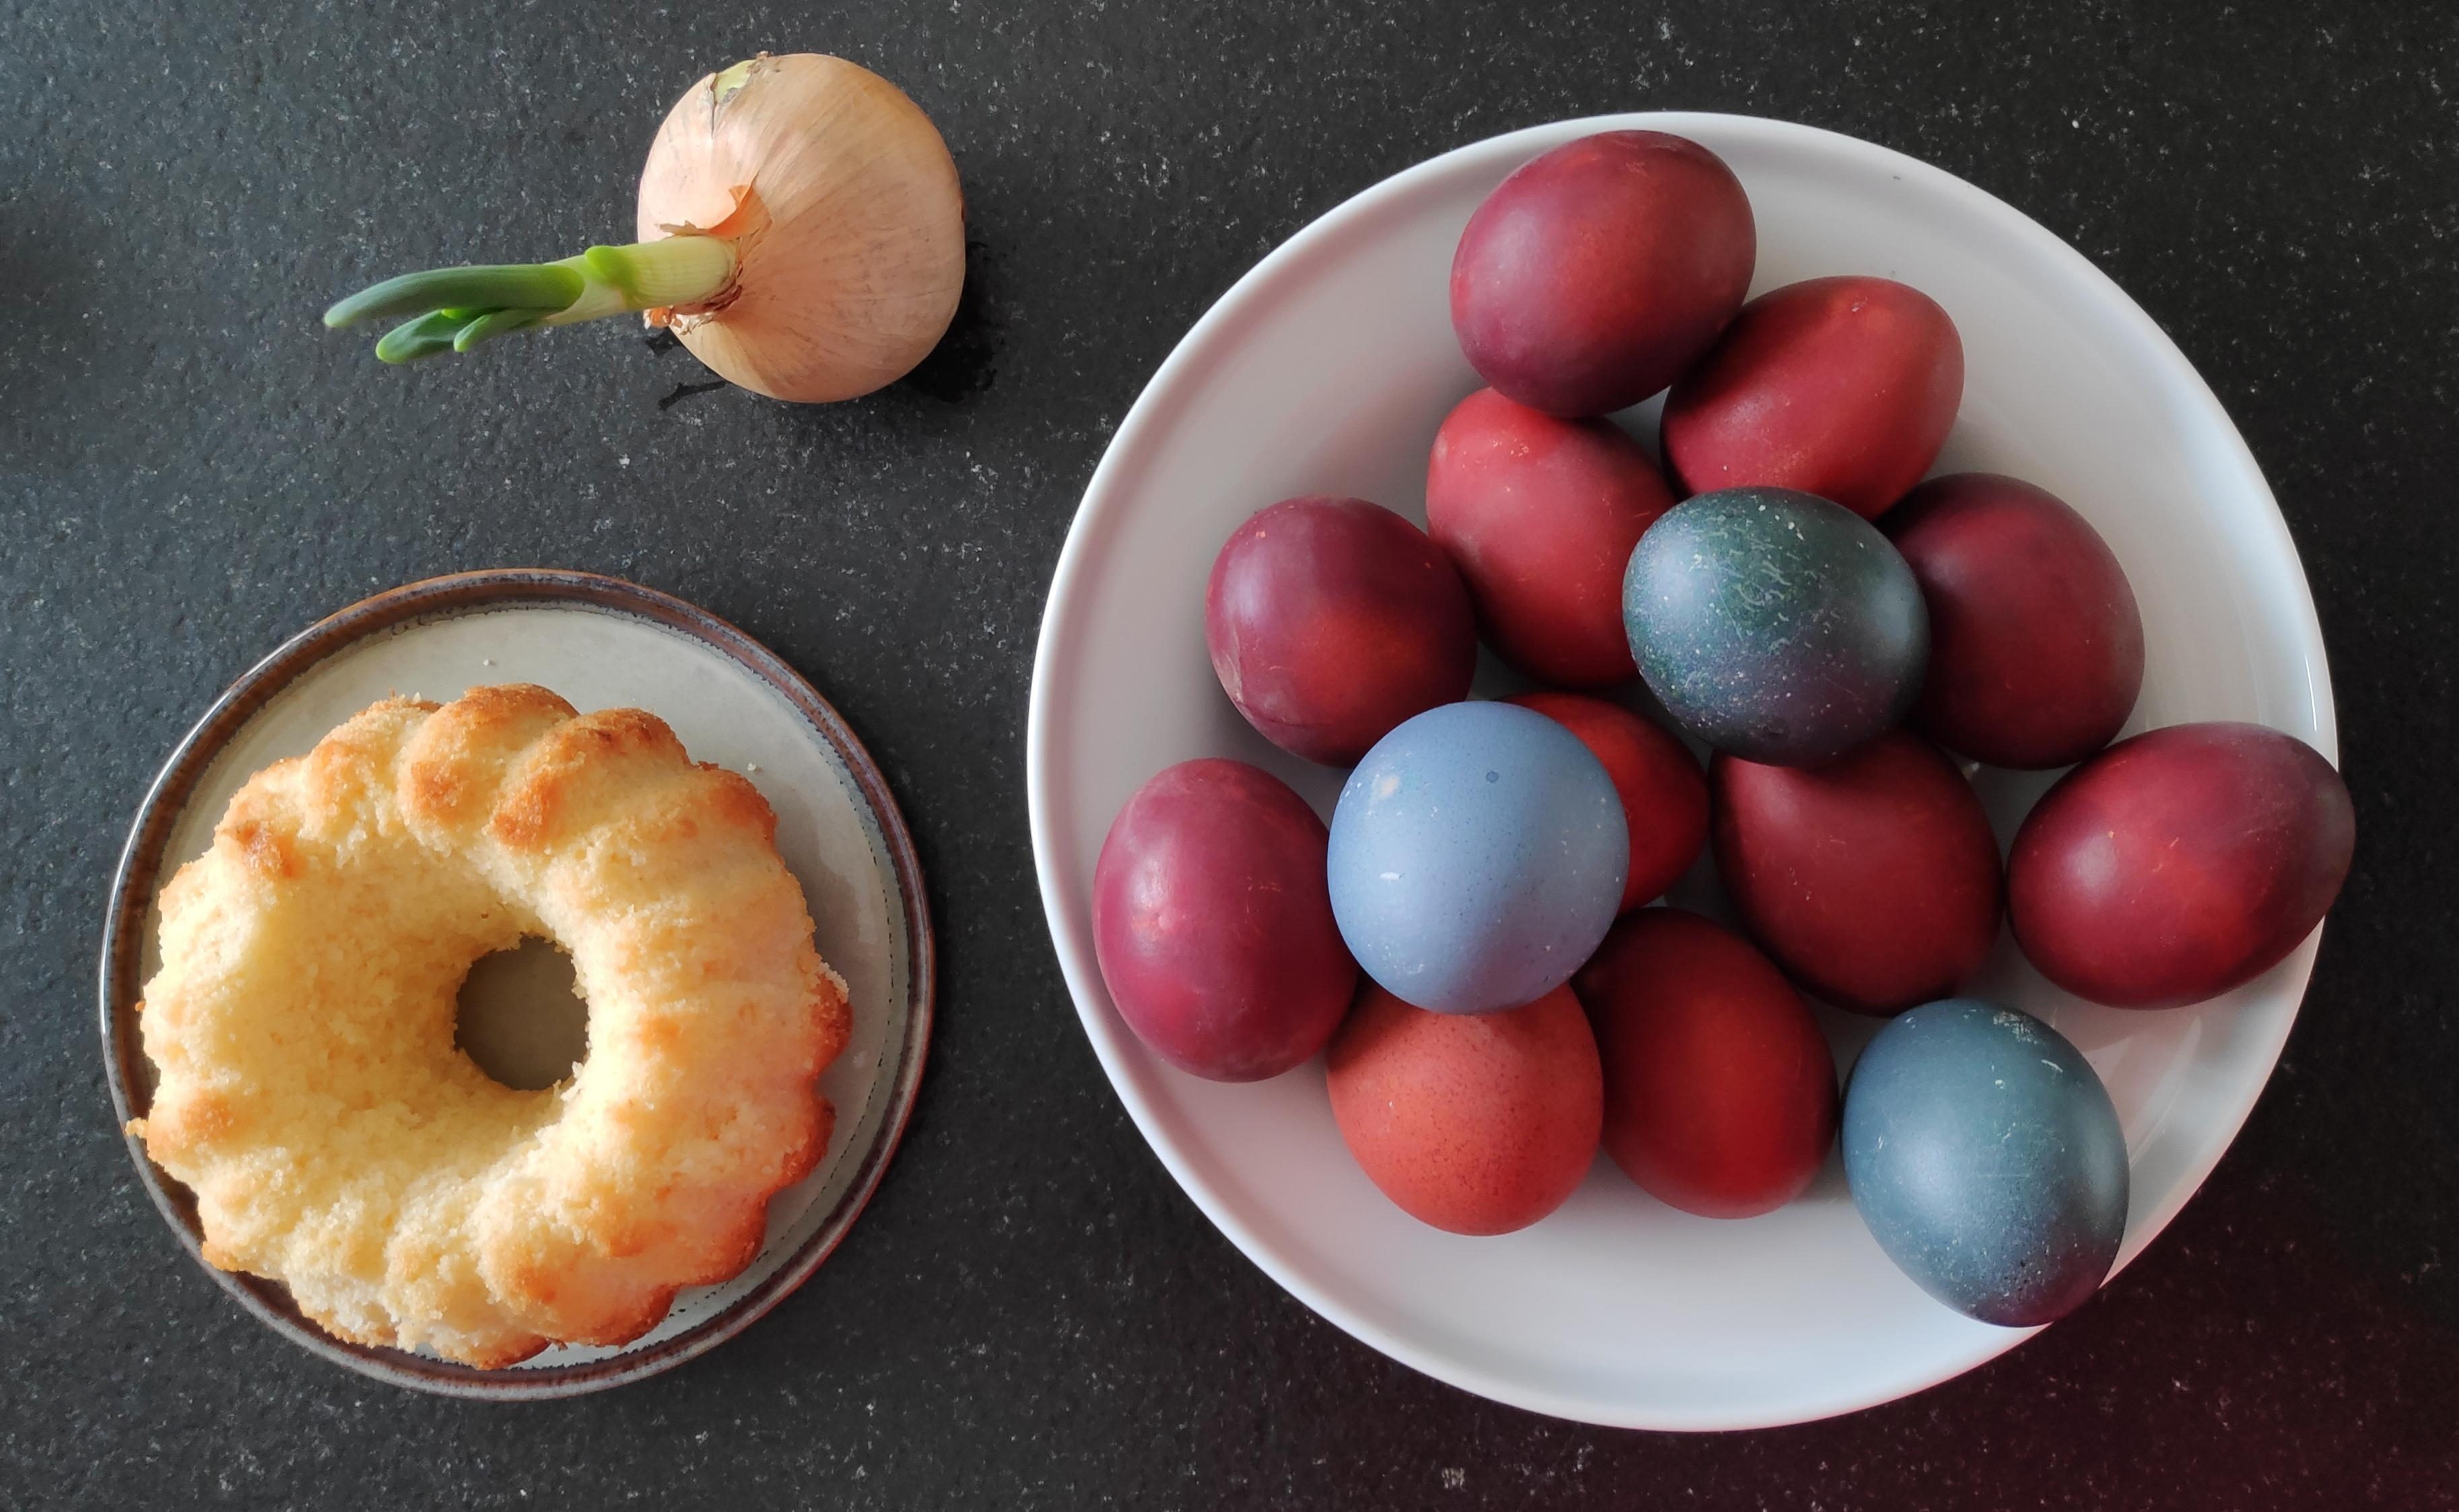 .Zwiebel • Blaukraut.
#Ostereier #Zwiebelschalen #Rotkohl #Blaukraut #natürlichesFärben #färben #Ostern #Tradition